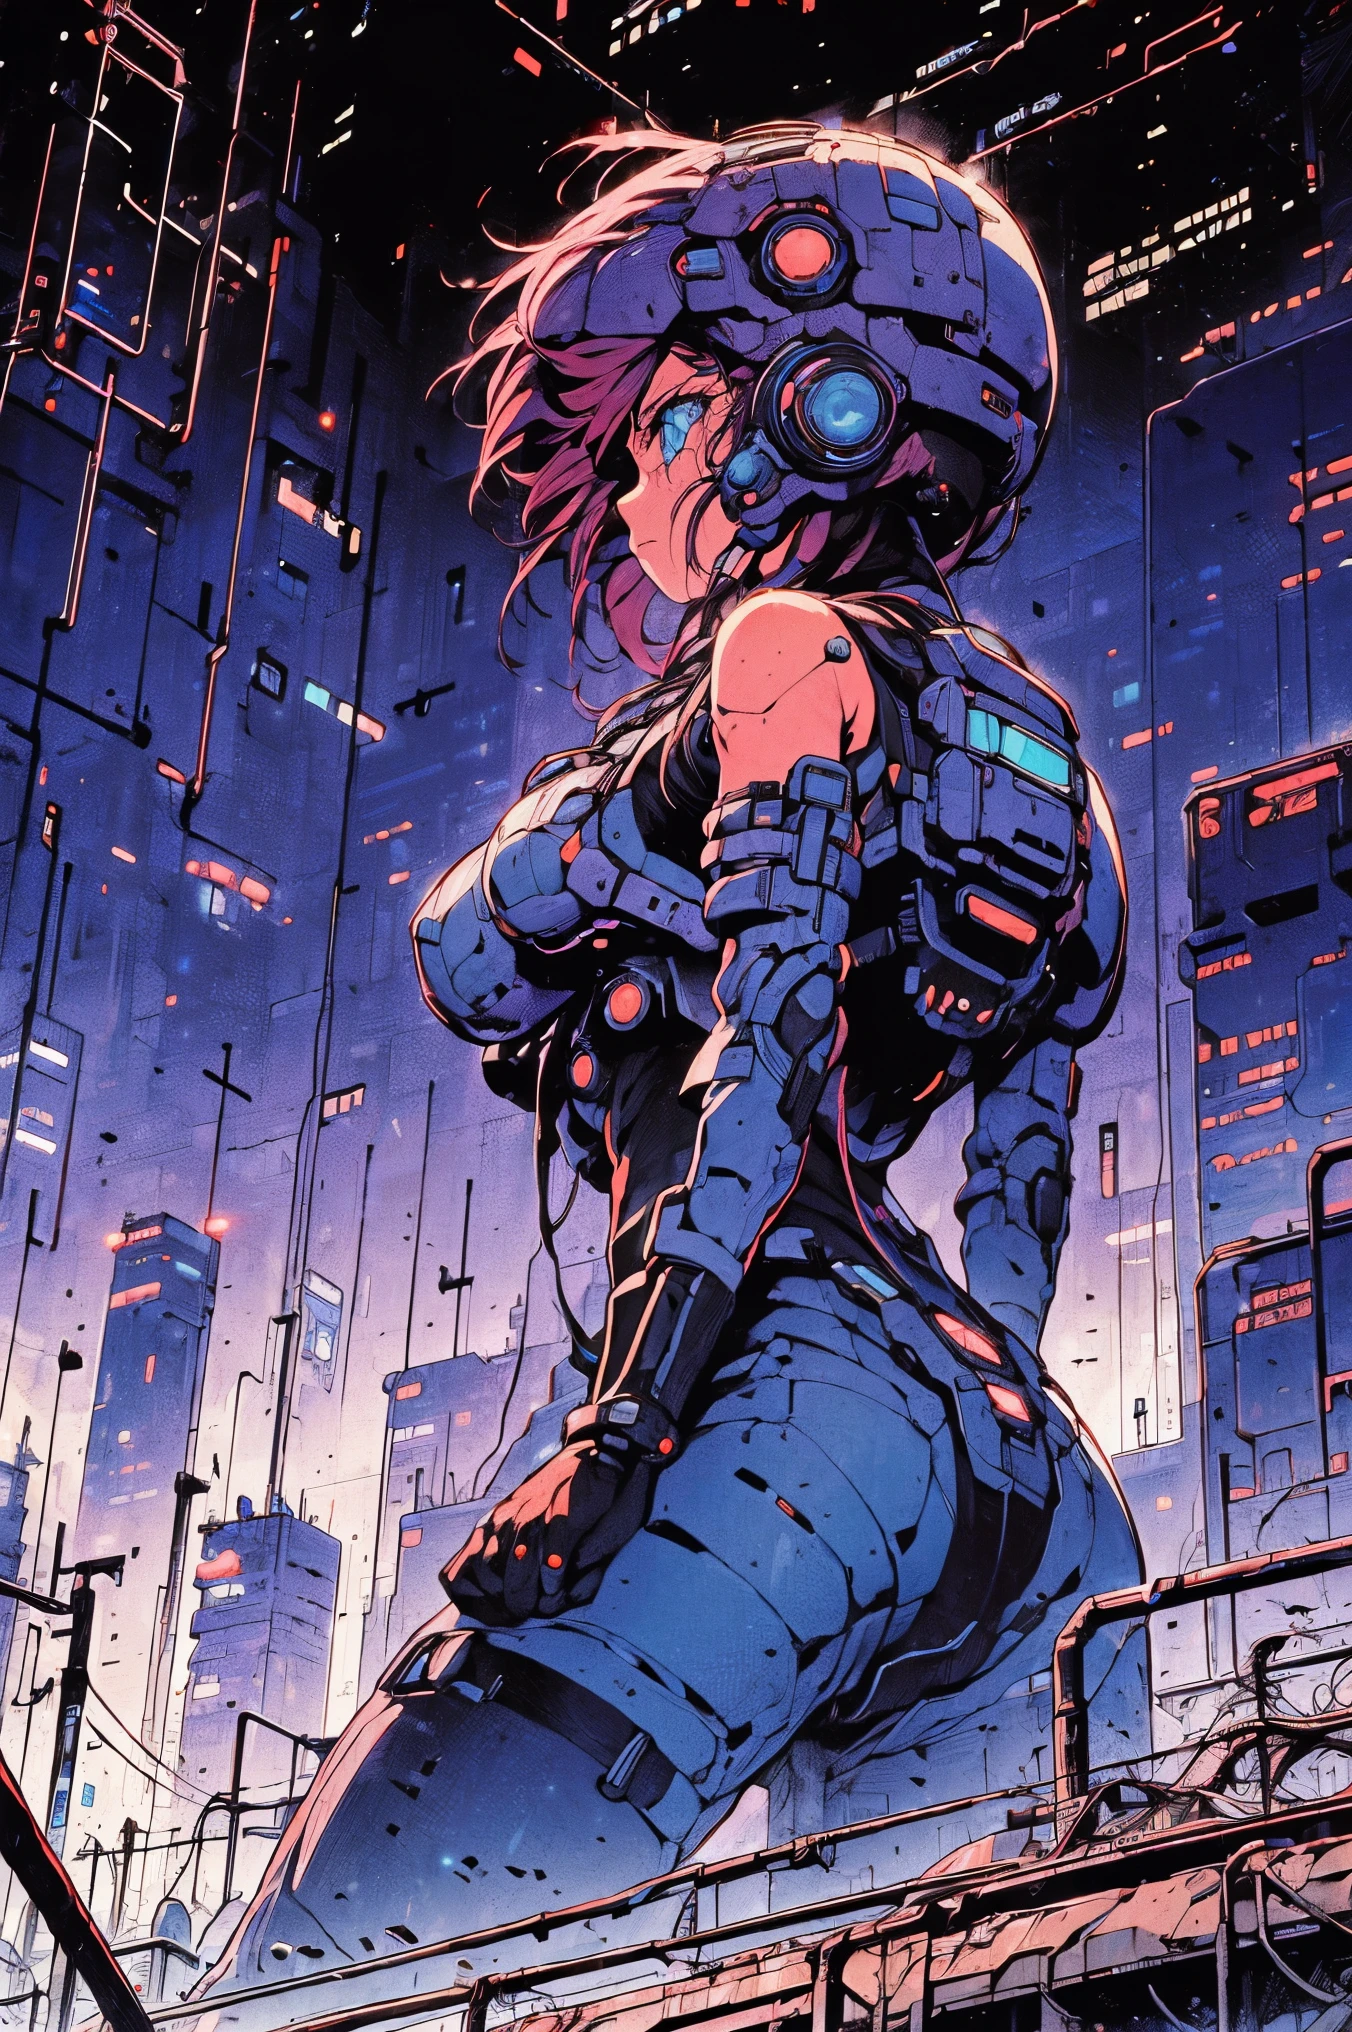 ((futuro ciberpunk)), imagem do centro de uma cidade cyberpunk, cercado por prédios com um rio no meio, balsa na cidade, balsa amarela, ponto de passagem da cidade, cartazes publicitários em todos os lugares, futuro retrô